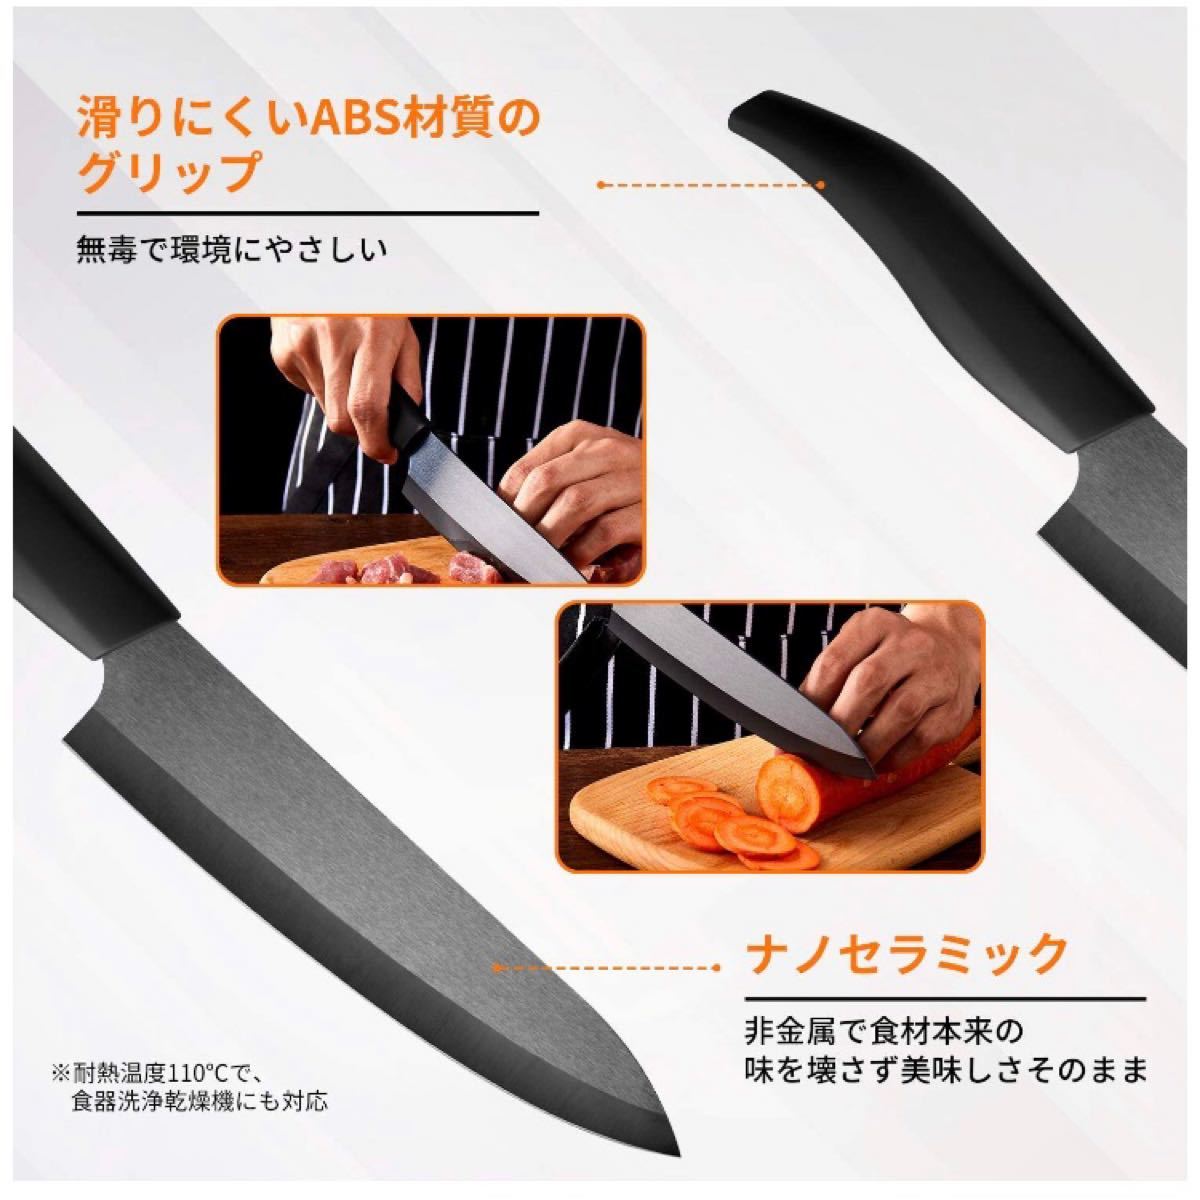 セラミック 包丁 三徳包丁 牛刀 セラミックナイフ 黒刃 全長300mm